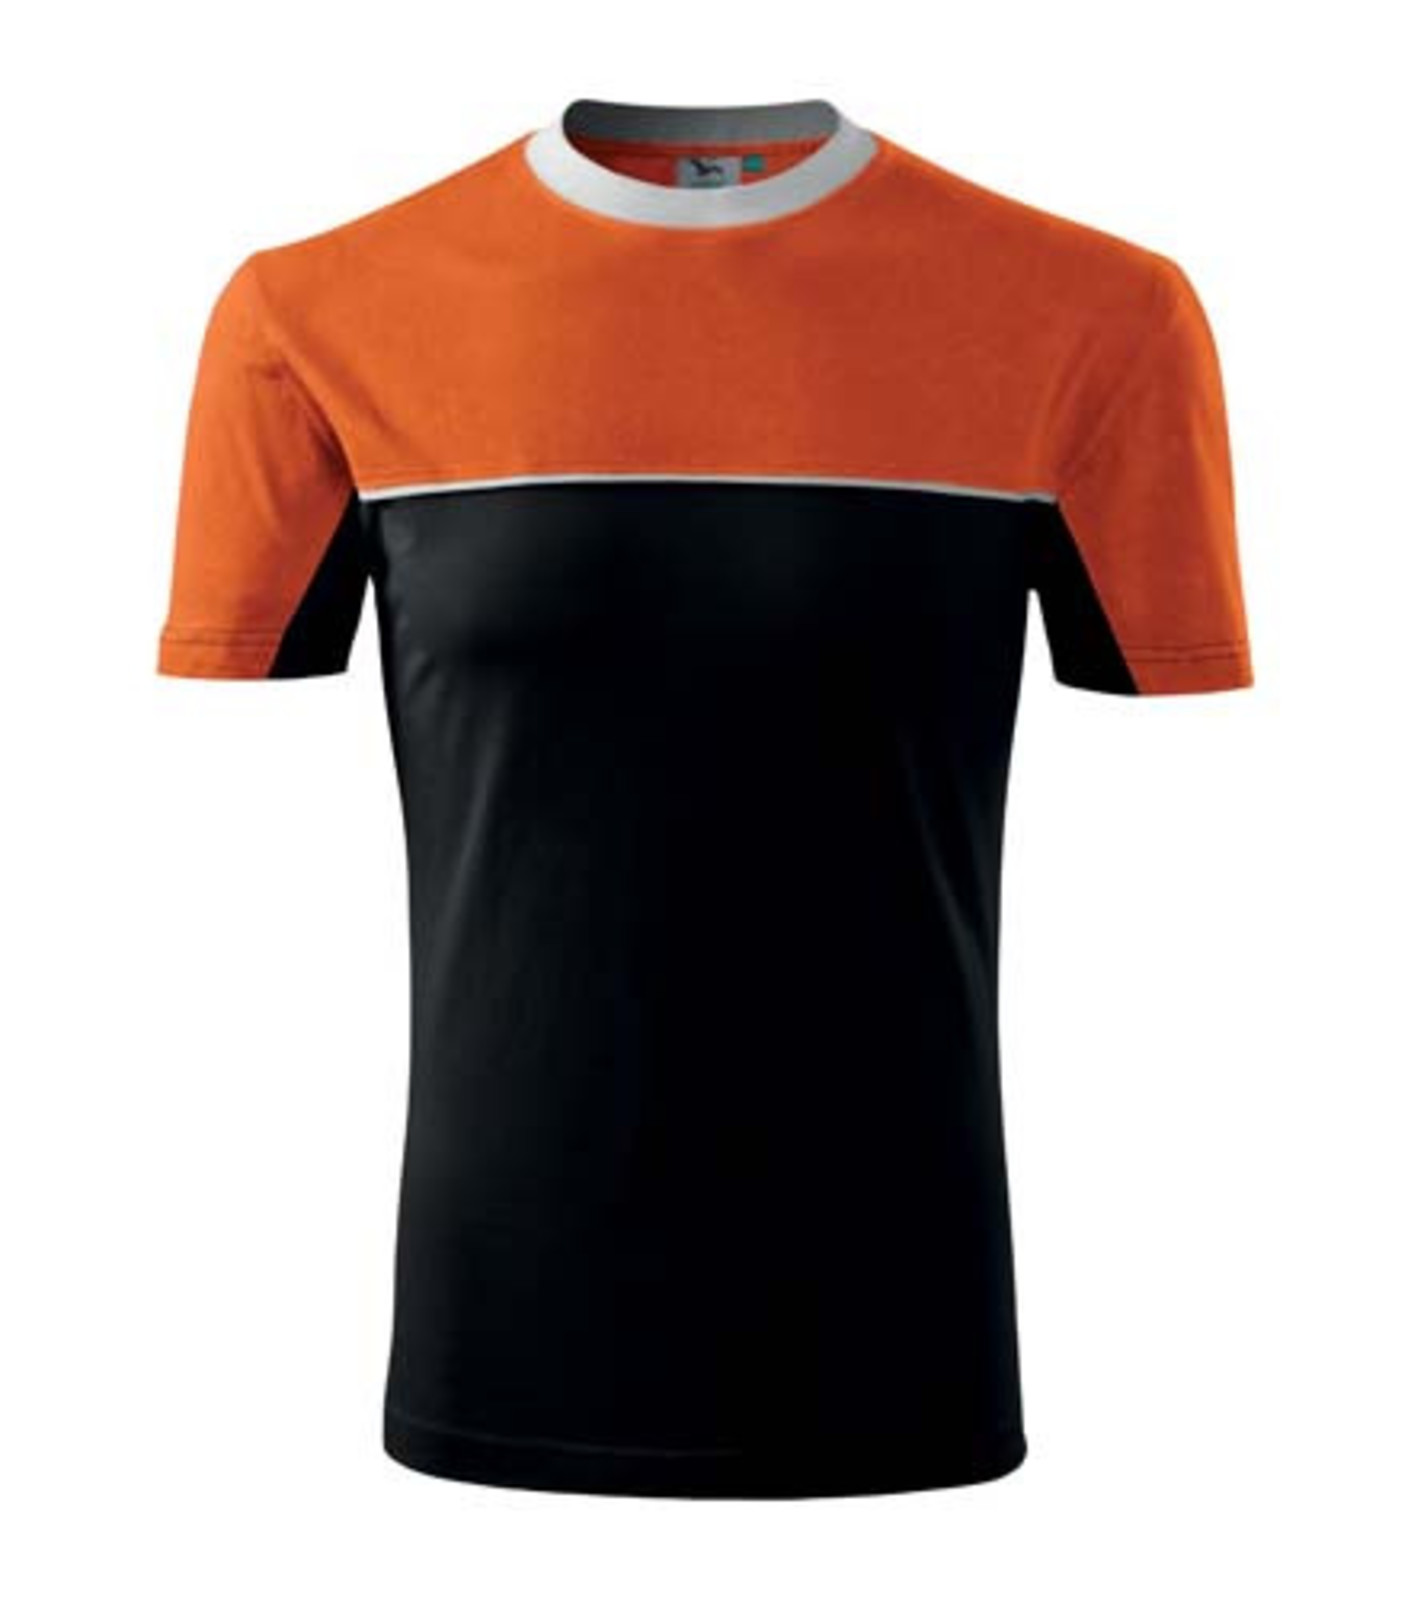 Unisex tričko Rimeck Colormix 109 - veľkosť: S, farba: čierna/oranžová